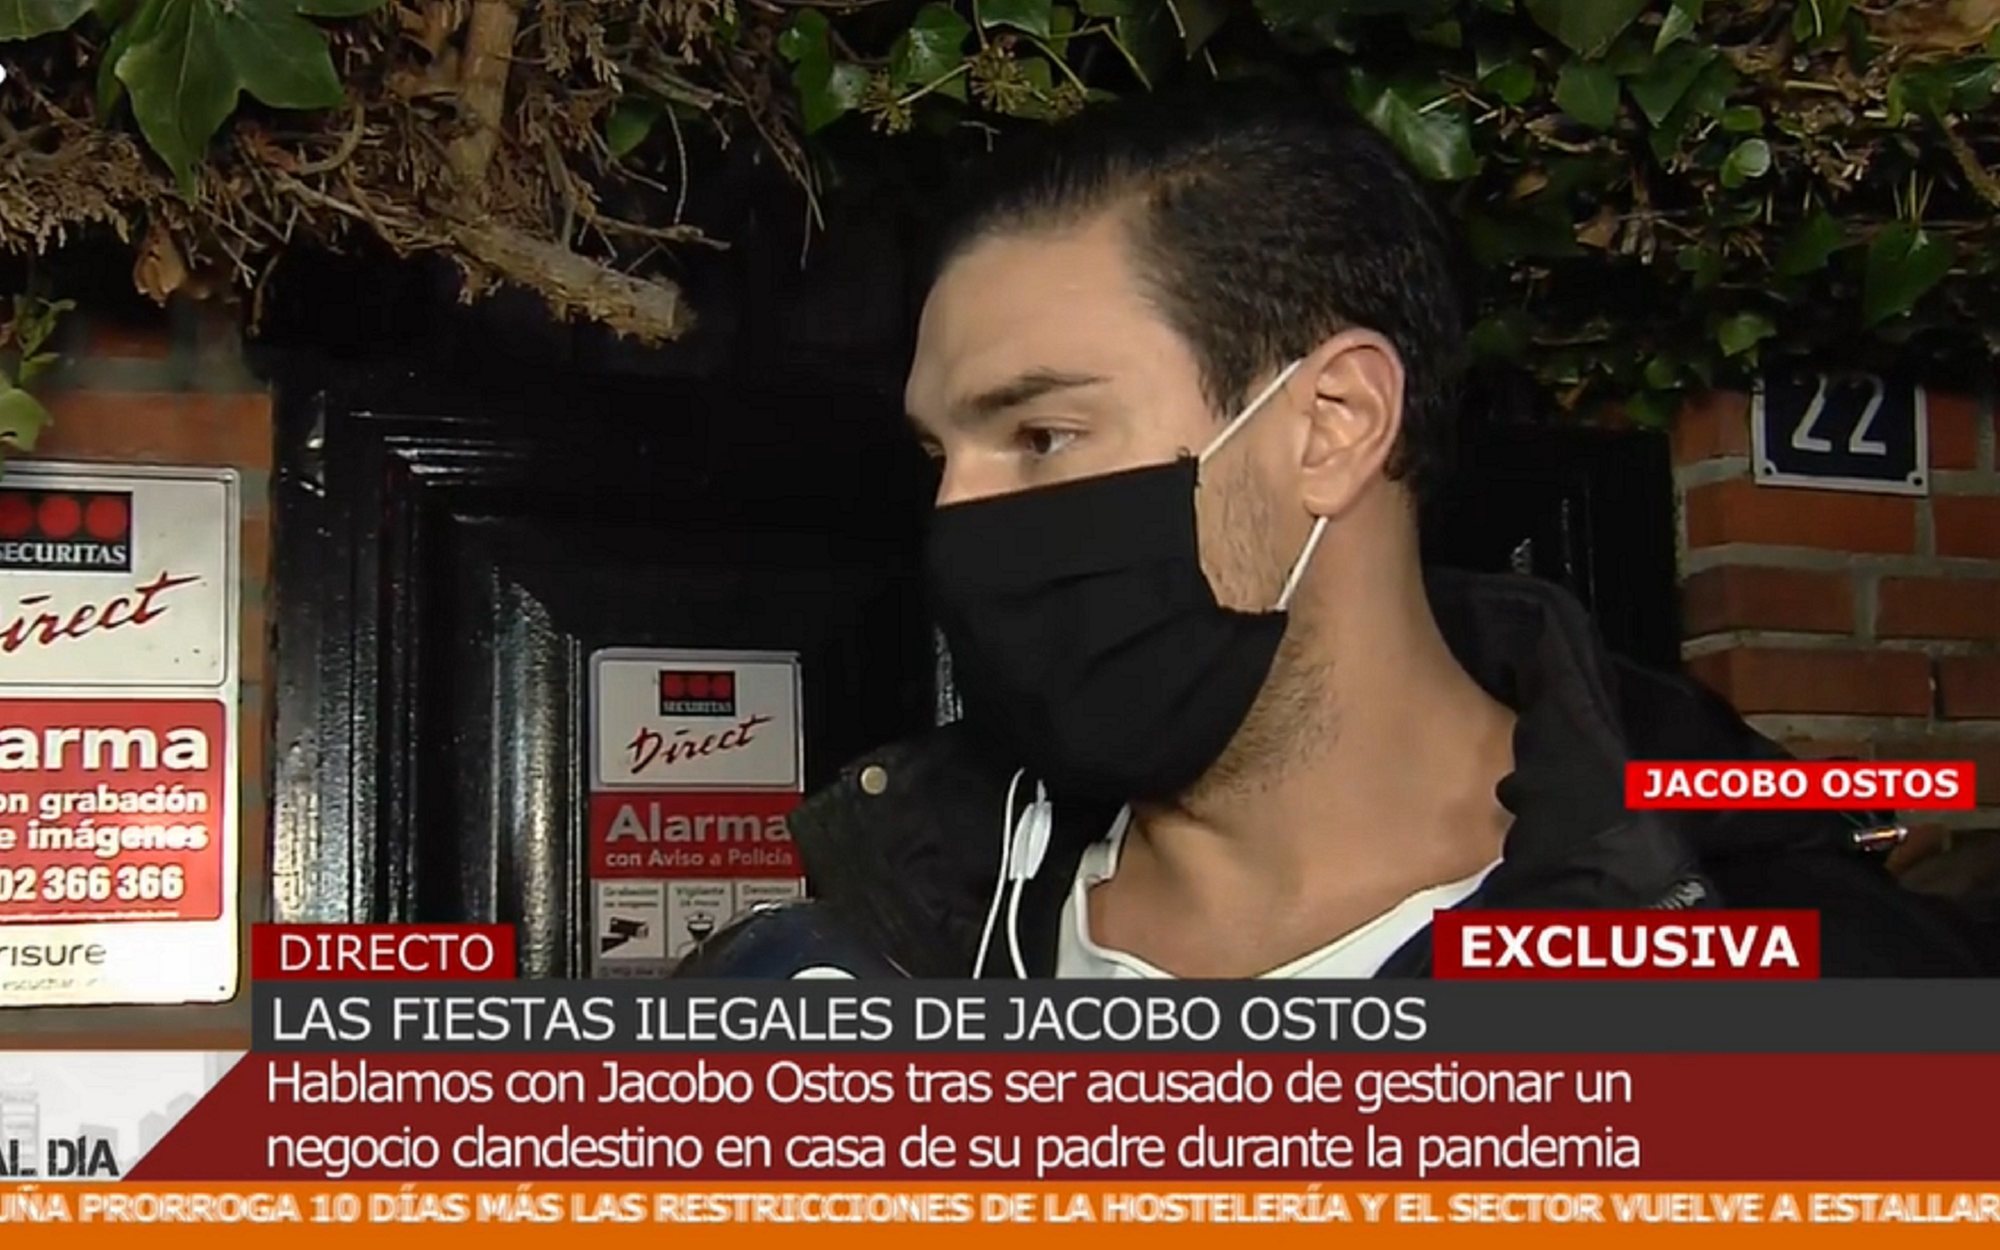 Jacobo Ostos niega haber organizado fiestas ilegales en su casa: "Estoy recibiendo amenazas de muerte"